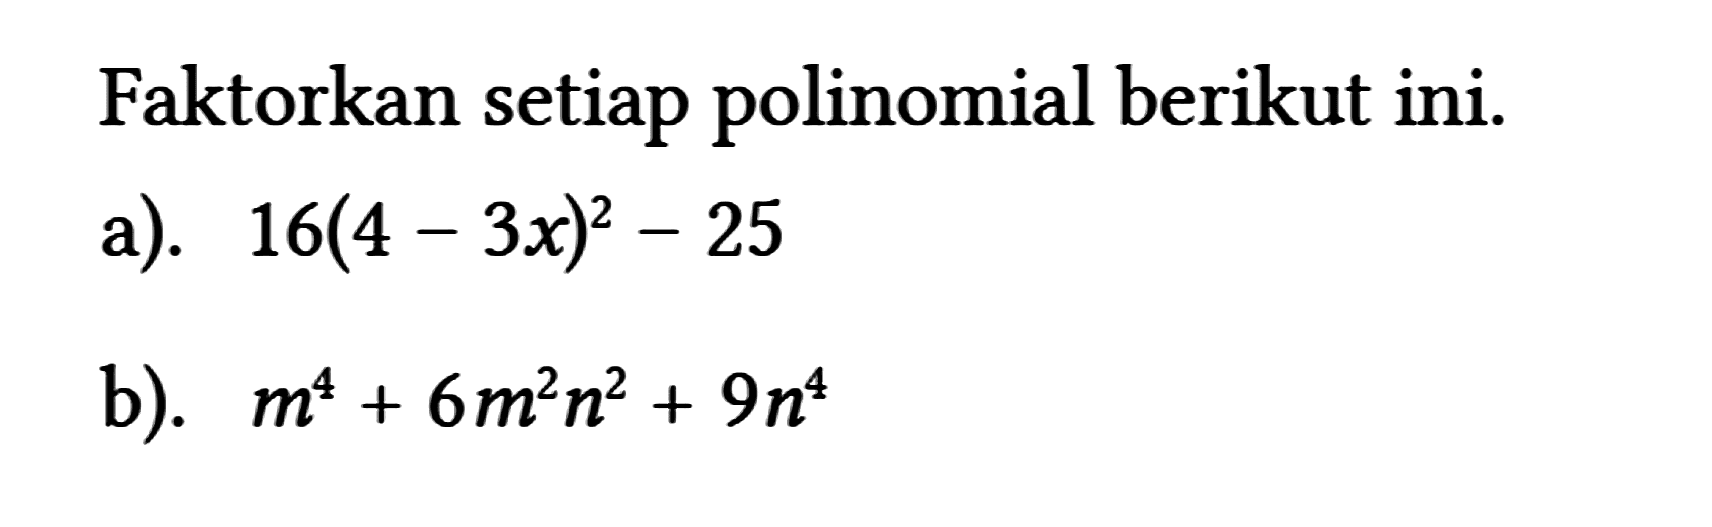 Faktorkan setiap polinomial berikut ini.
 a). 16(4-3 x)^(2)-25 
 b). m^(4)+6 m^(2) n^(2)+9 n^(4)